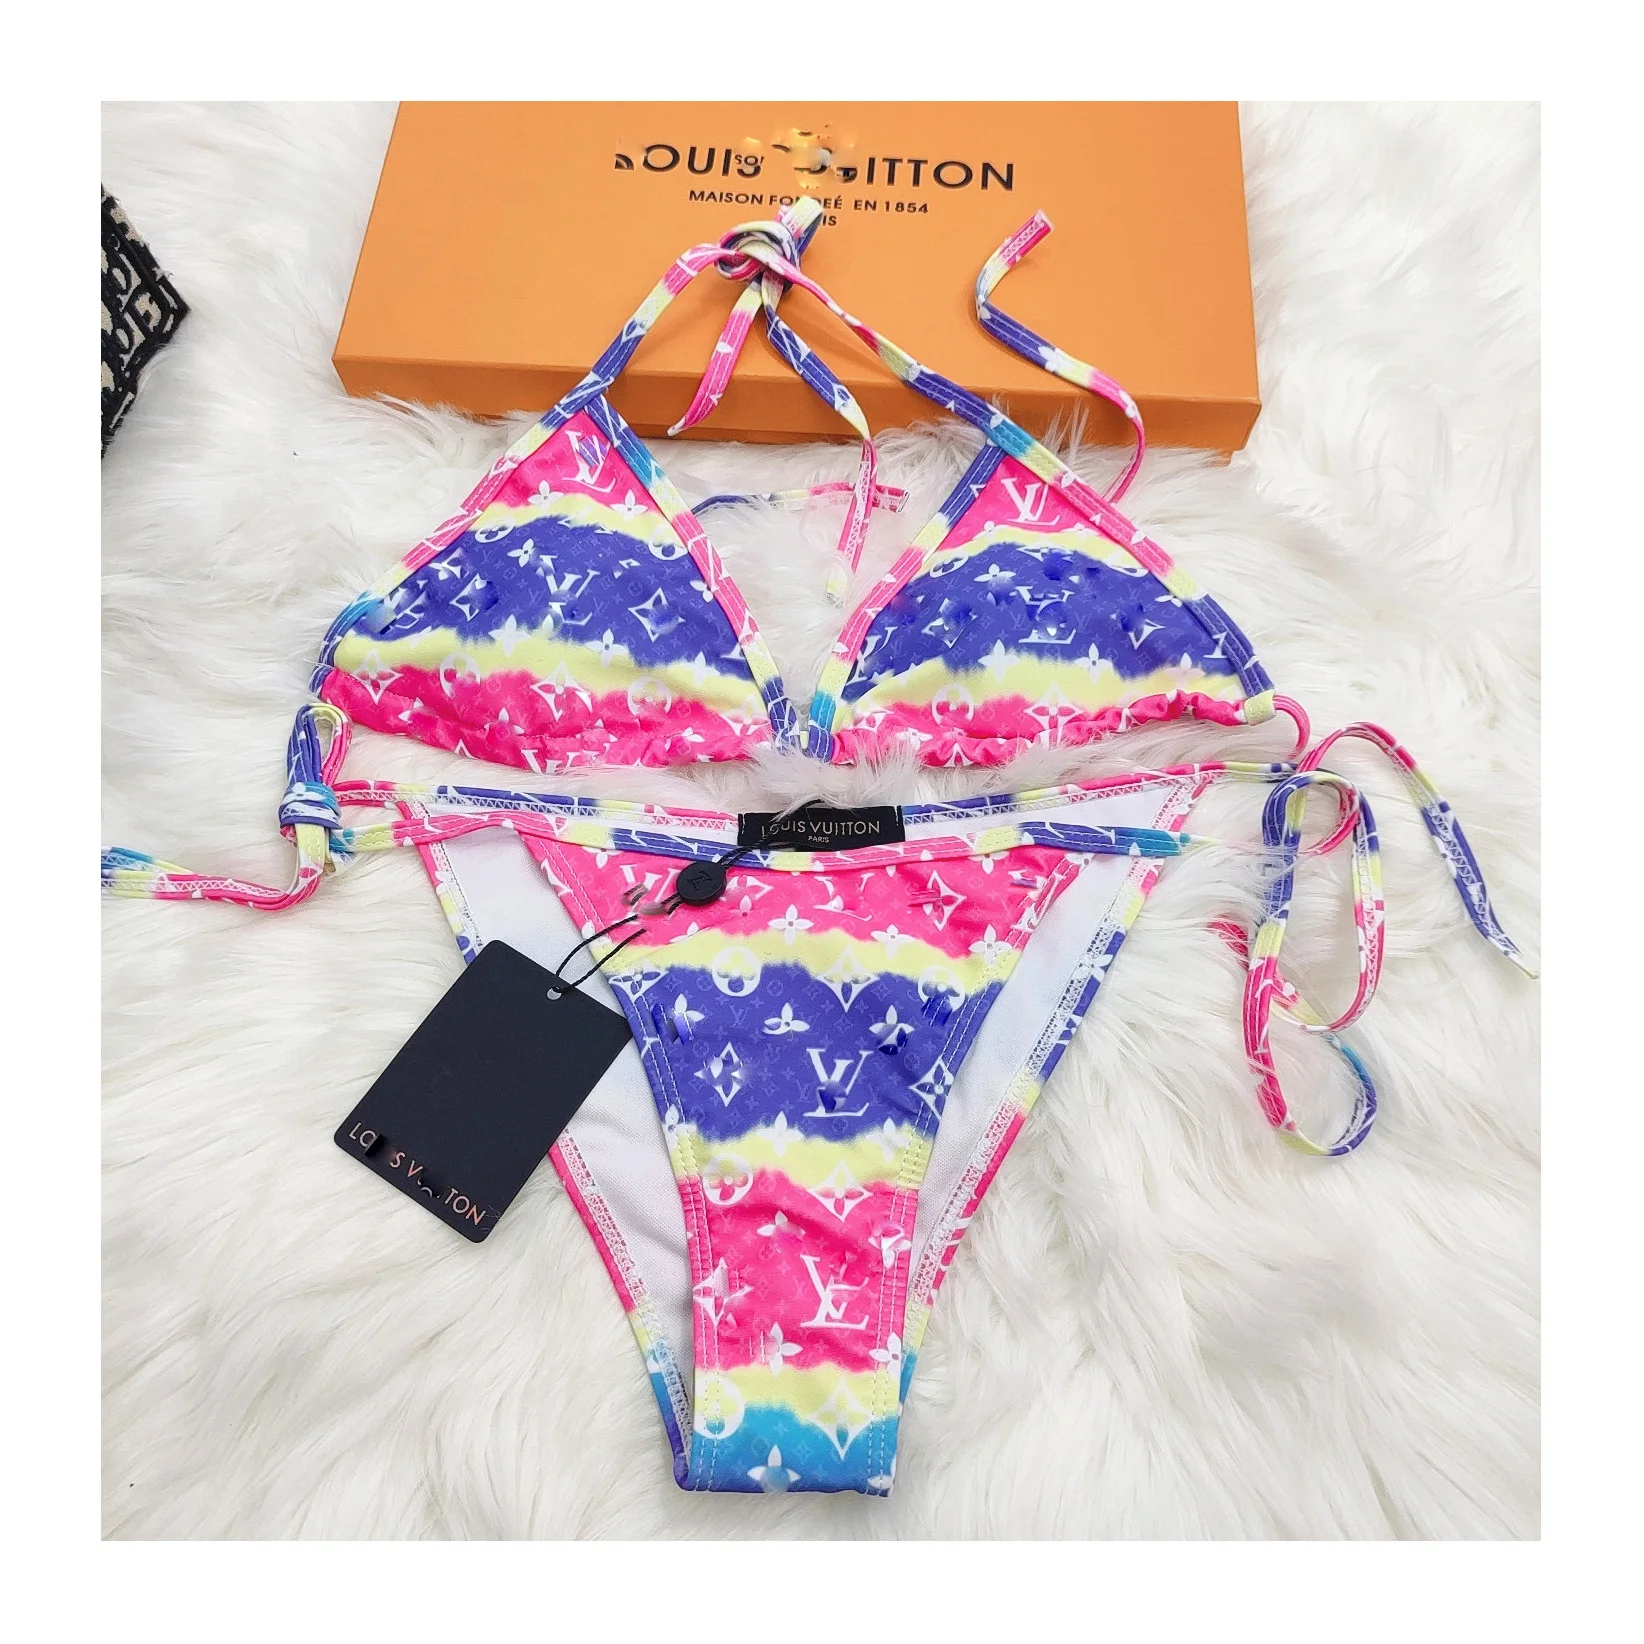 

Fvshion Designer Swimsuits Famous Brands Traje De Banos Bathing Suits Women 2021 Biquini Beach Outfits Swimsuit Set Bikinis